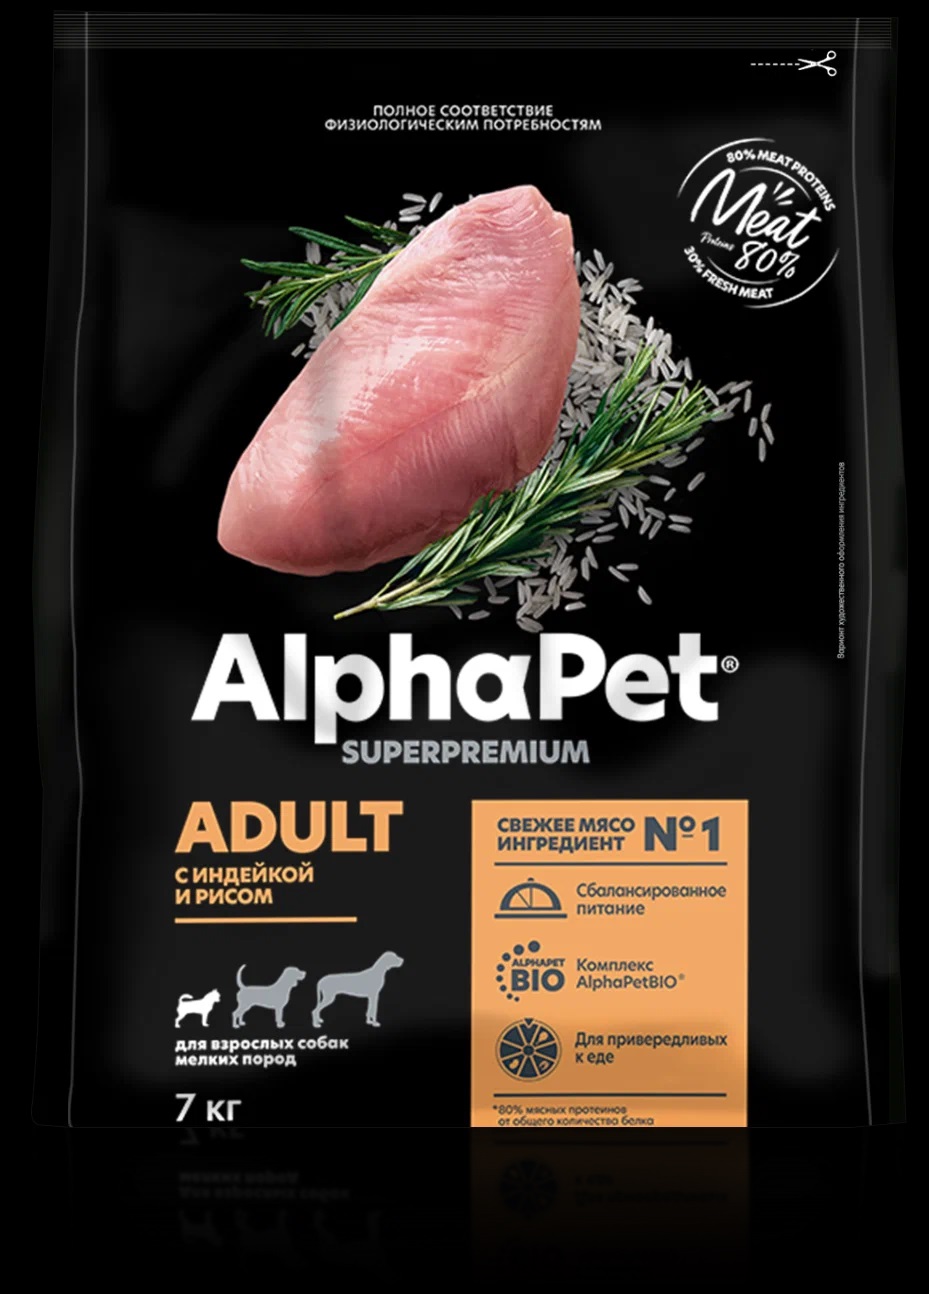 Alphapet superpremium корм для собак. Alpha Pet корм. Альфапет корма для собак. Alphapet Superpremium 1.5 кг для взрослых собак мелких пород. Альфапет 7 кг.